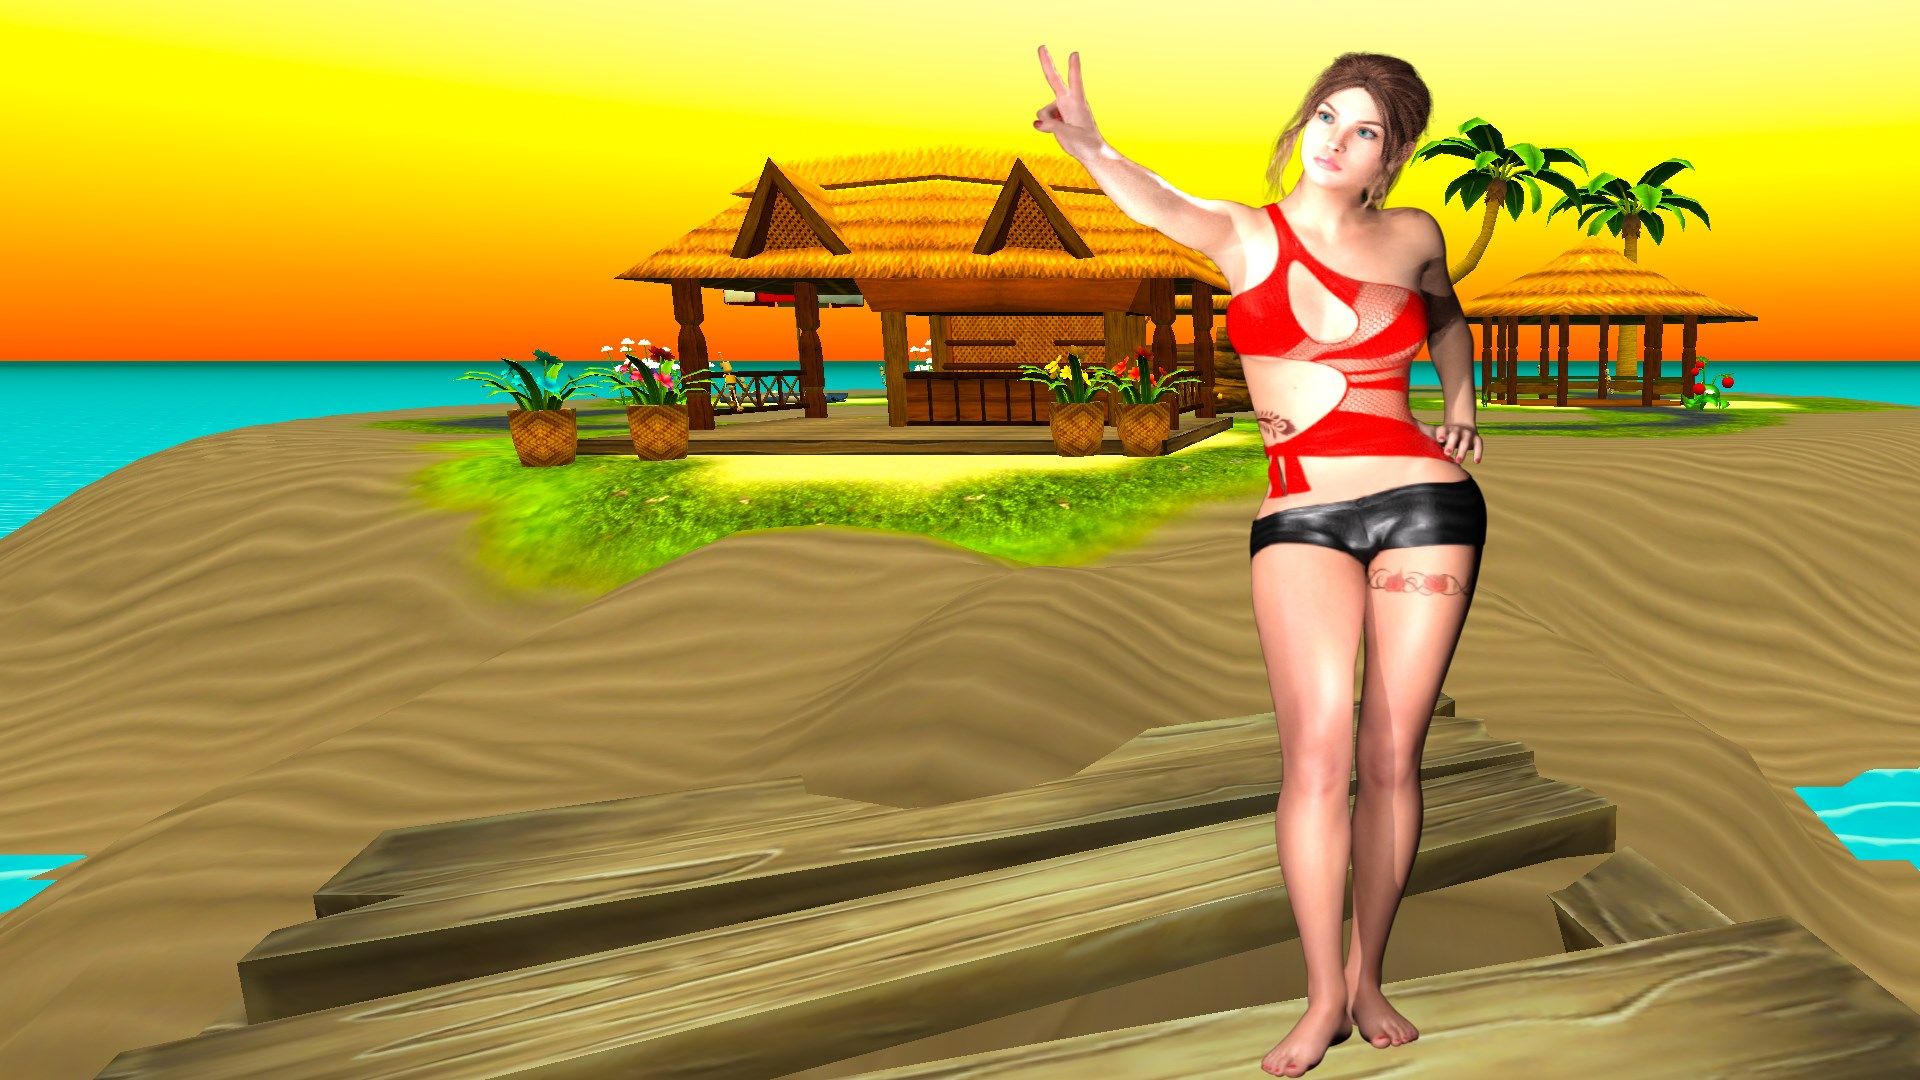 Virtual Exquisite Beach Dancer [HD+]